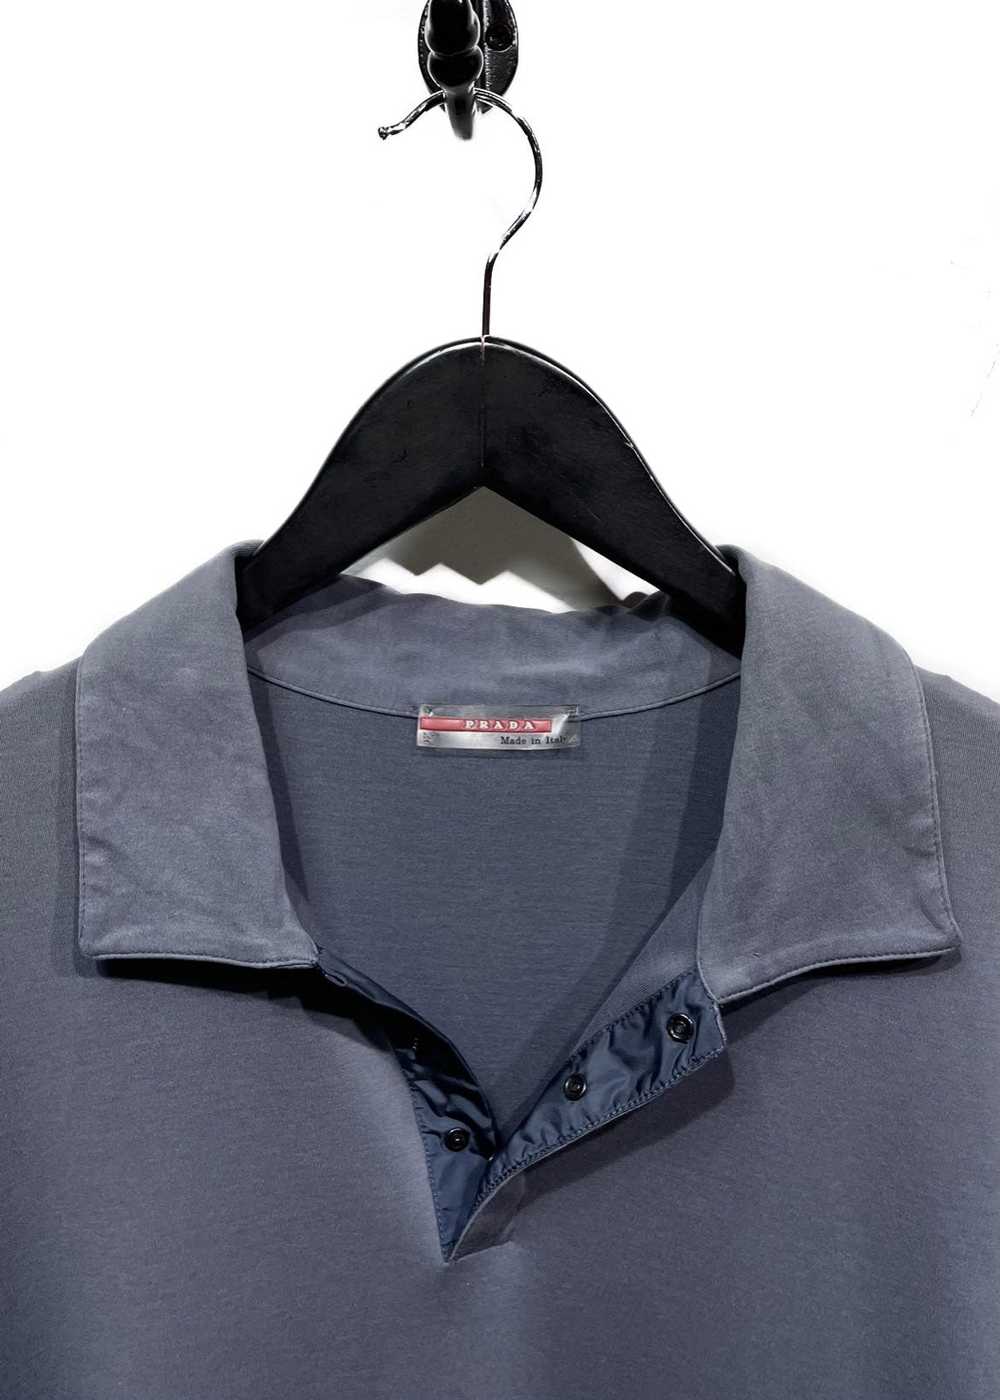 Prada Prada Linea Rossa Steel Grey Polo Shirt - image 4